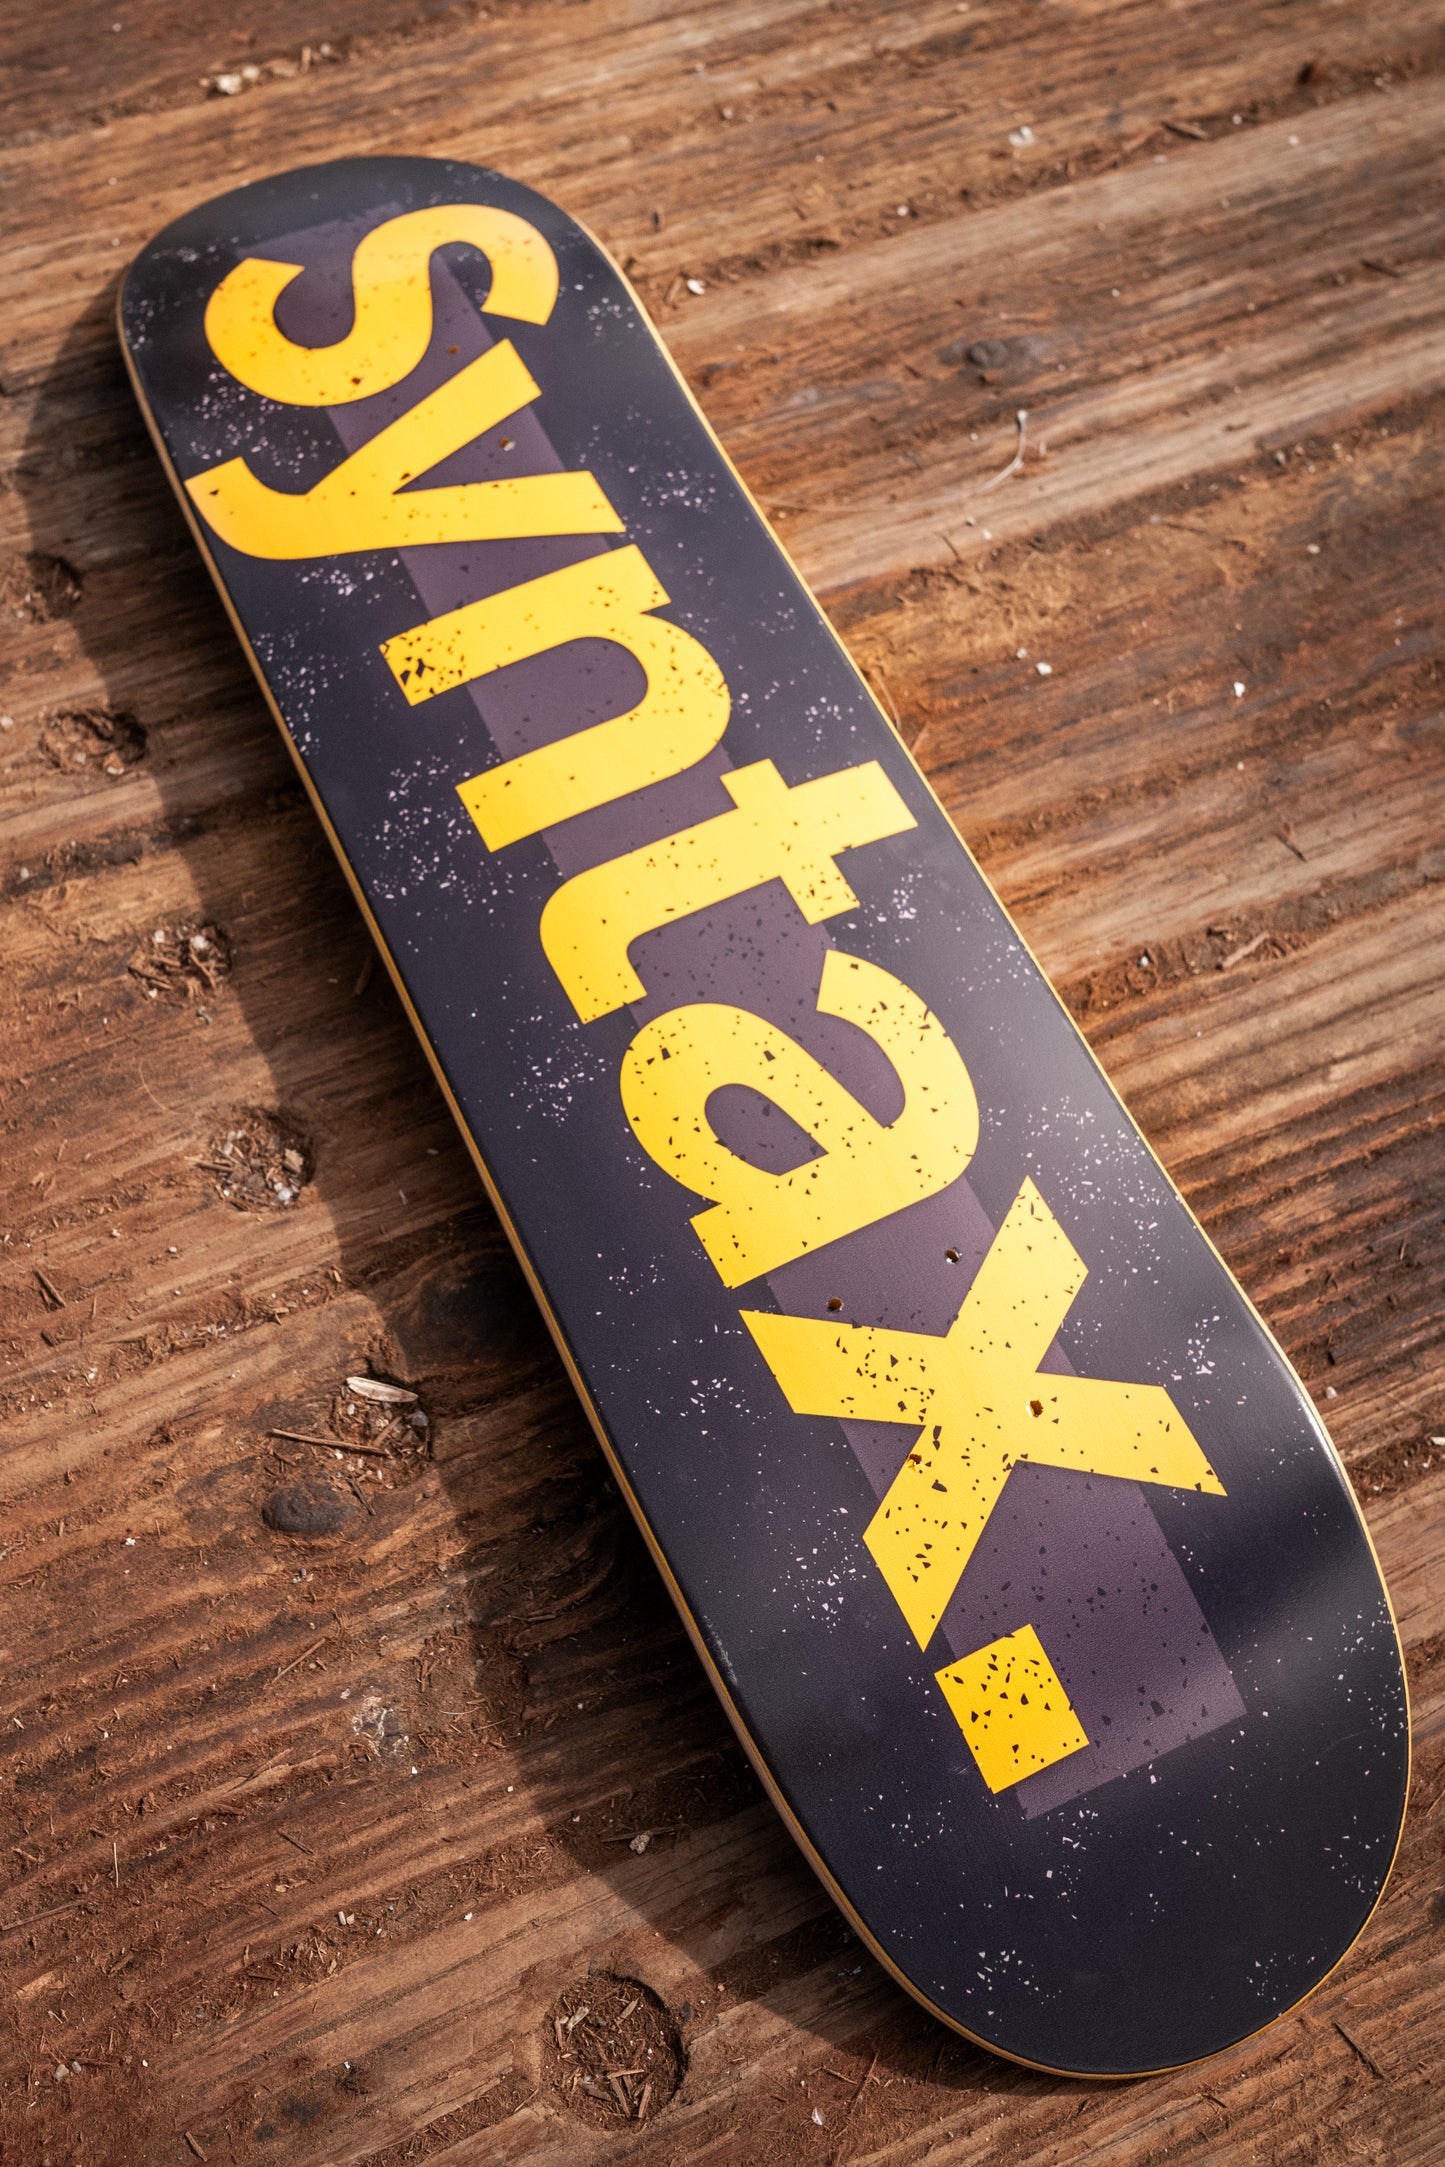 Syntax Skate Deck